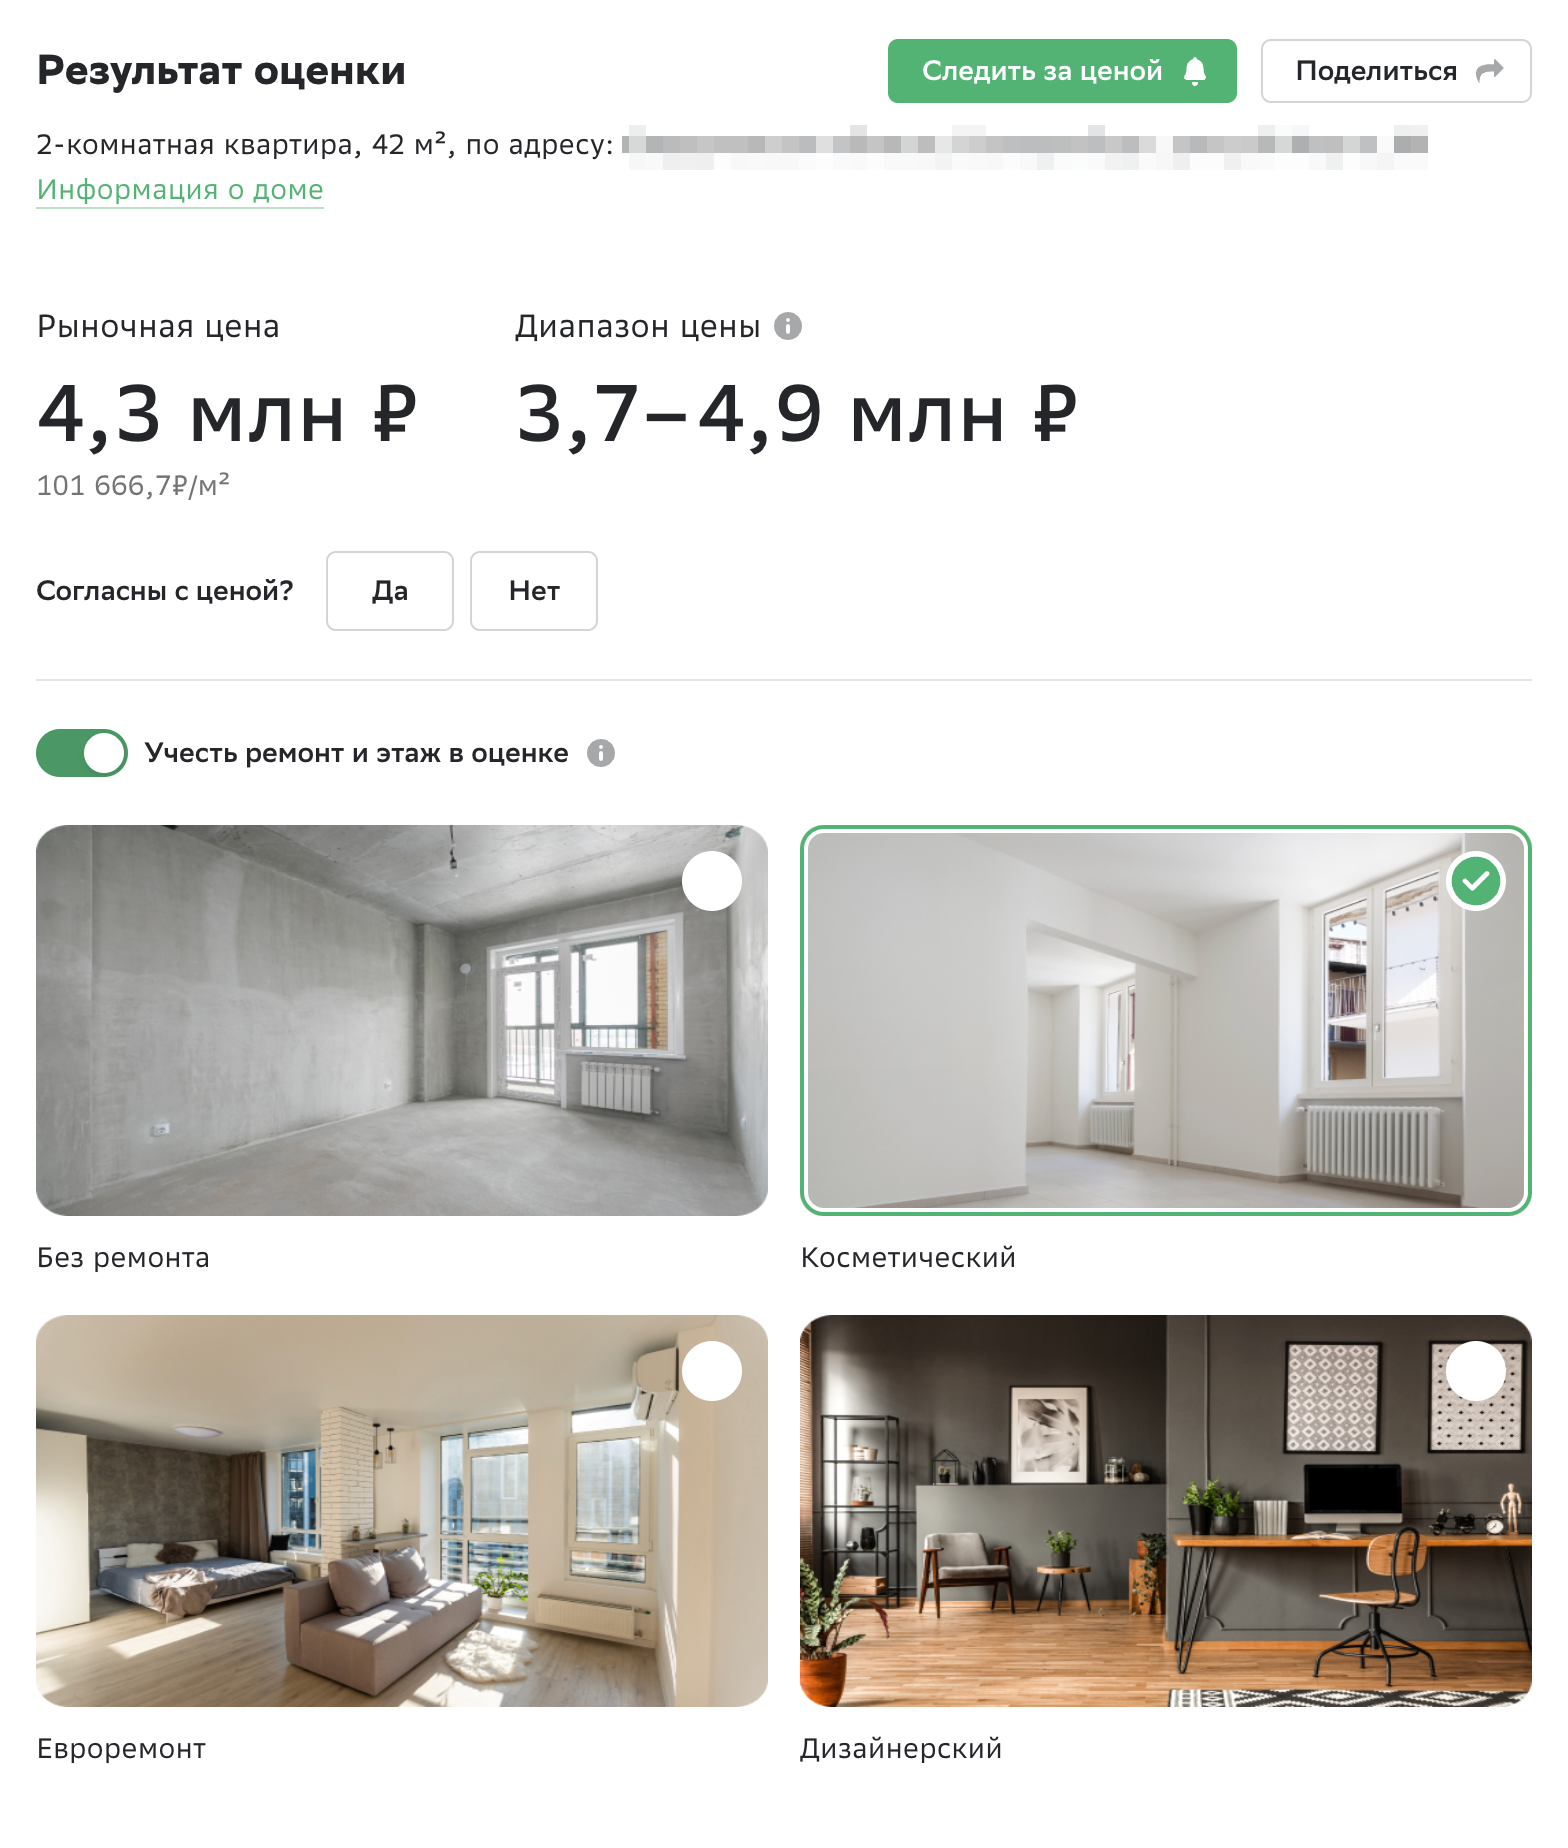 Двухкомнатная квартира в Екатеринбурге площадью 42 м² с косметическим ремонтом стоит около 4,3 млн рублей. Источник: domclick.ru